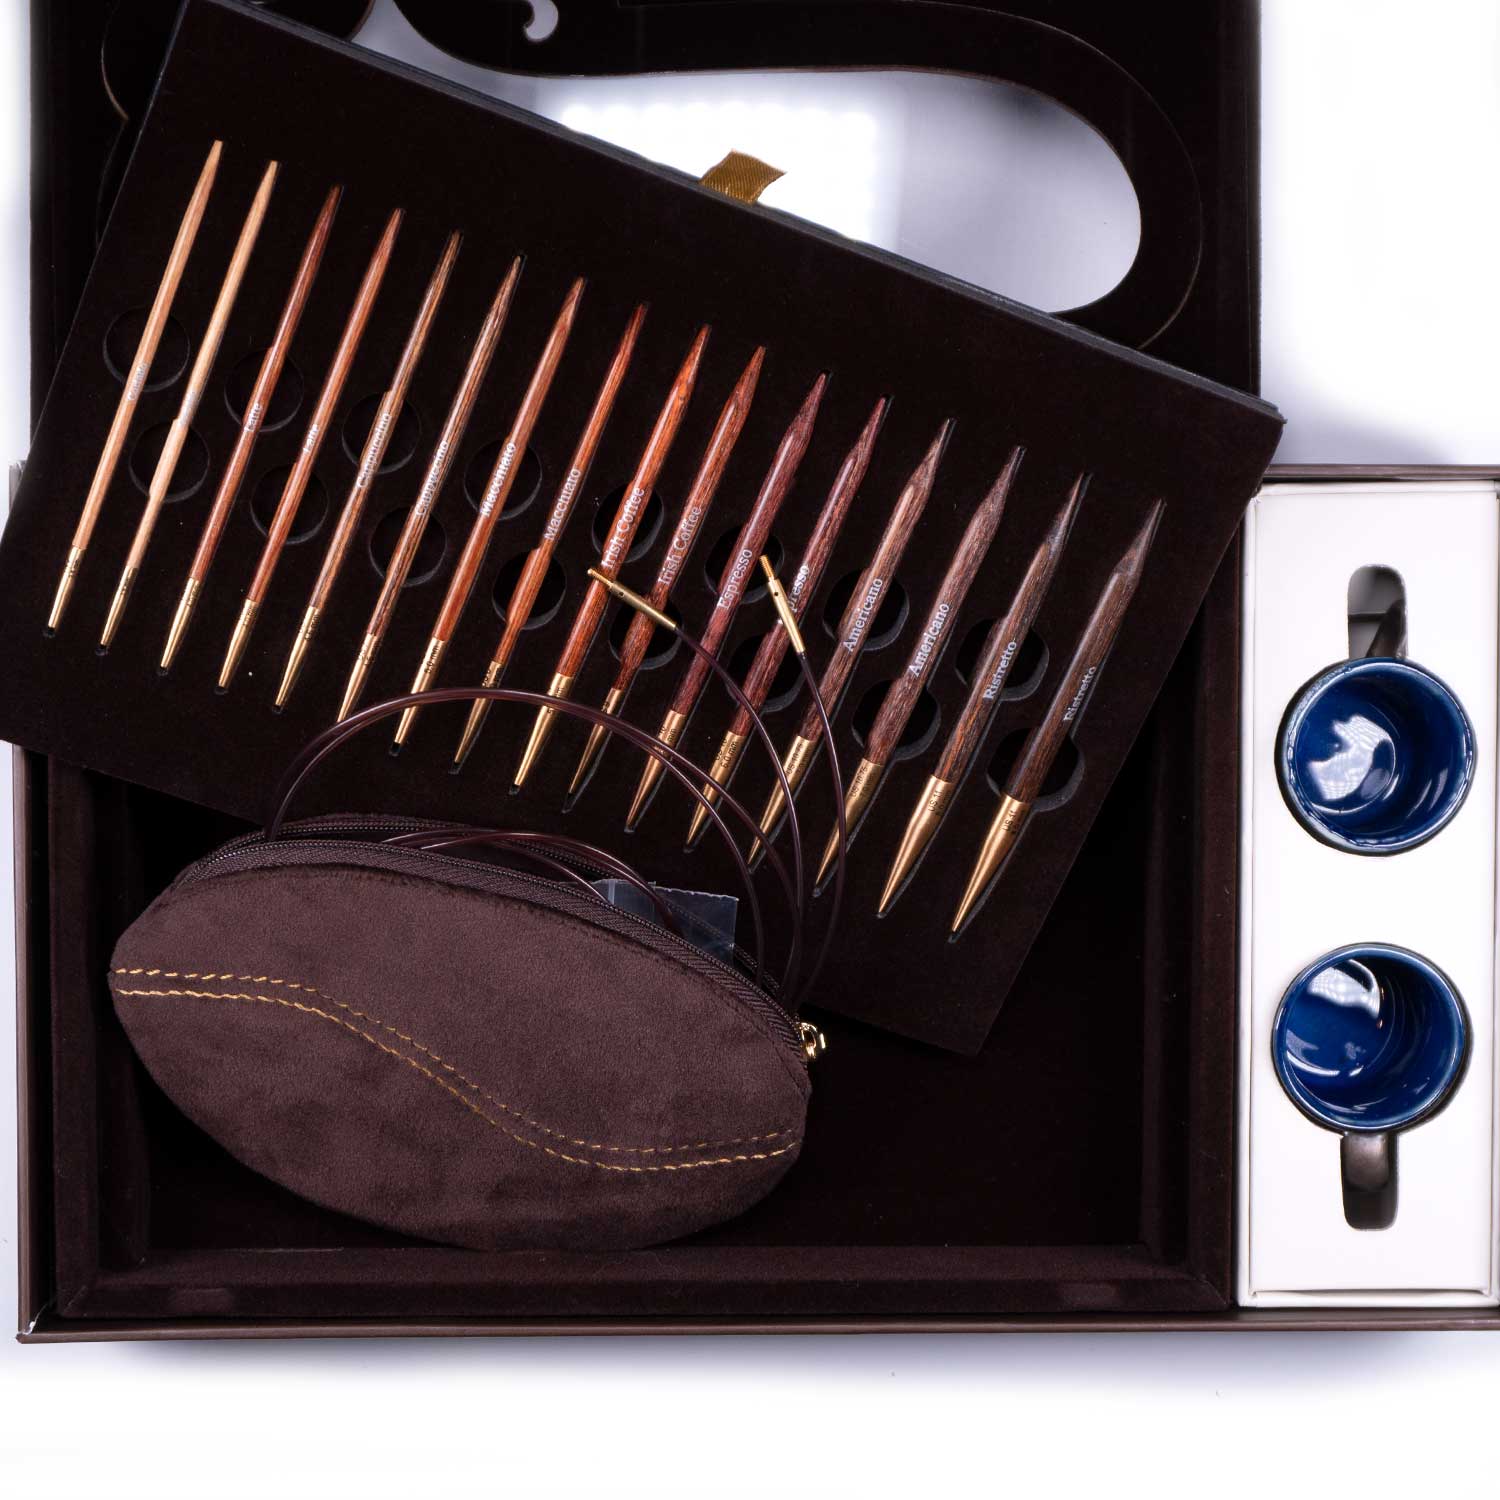 Set de regalo Knit & Sip con agujas de madera de abedul